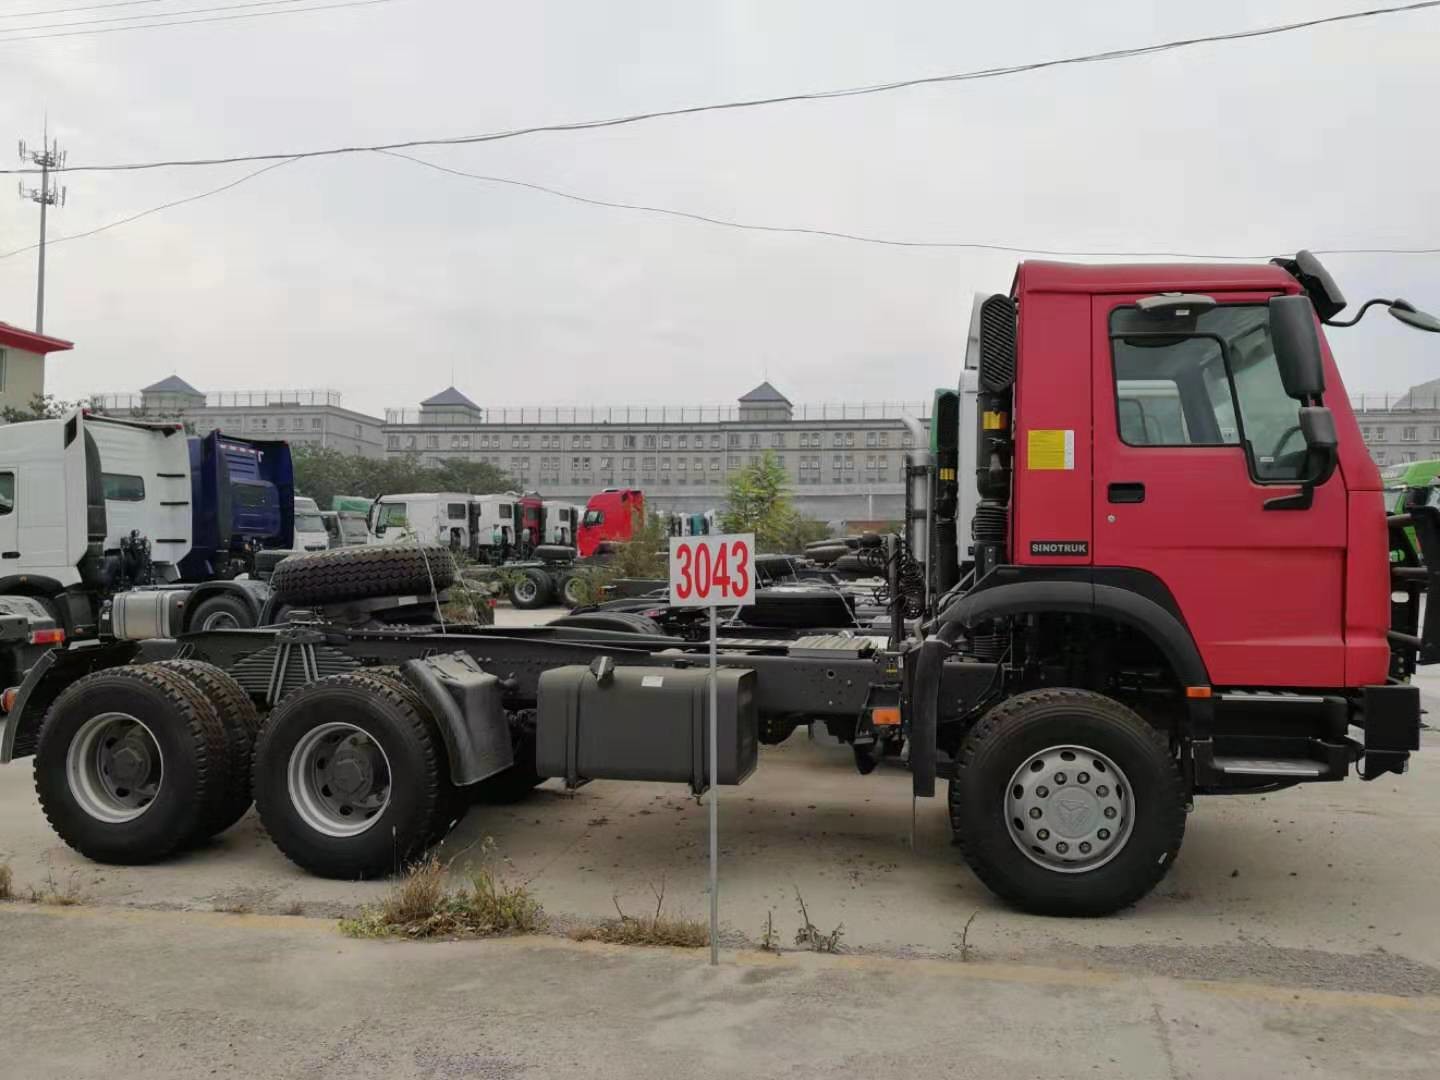 LKW des Sattelzug-371HP mit Reifen 12.00R20 und Vorderachse HF9